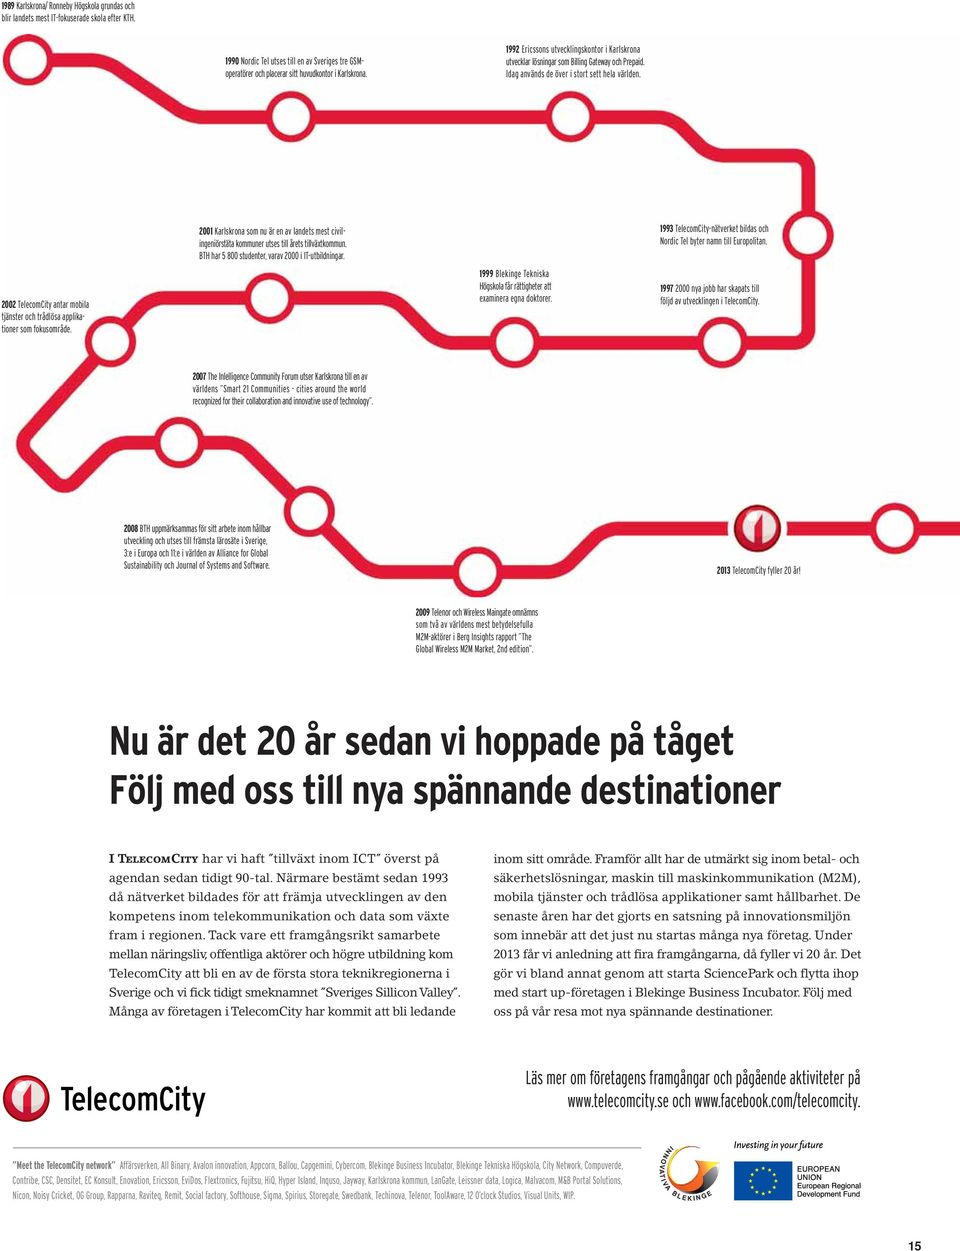 2002 TelecomCity antar mobila tjänster och trådlösa applikationer som fokusområde. 2001 Karlskrona som nu är en av landets mest civilingeniörstäta kommuner utses till årets tillväxtkommun.